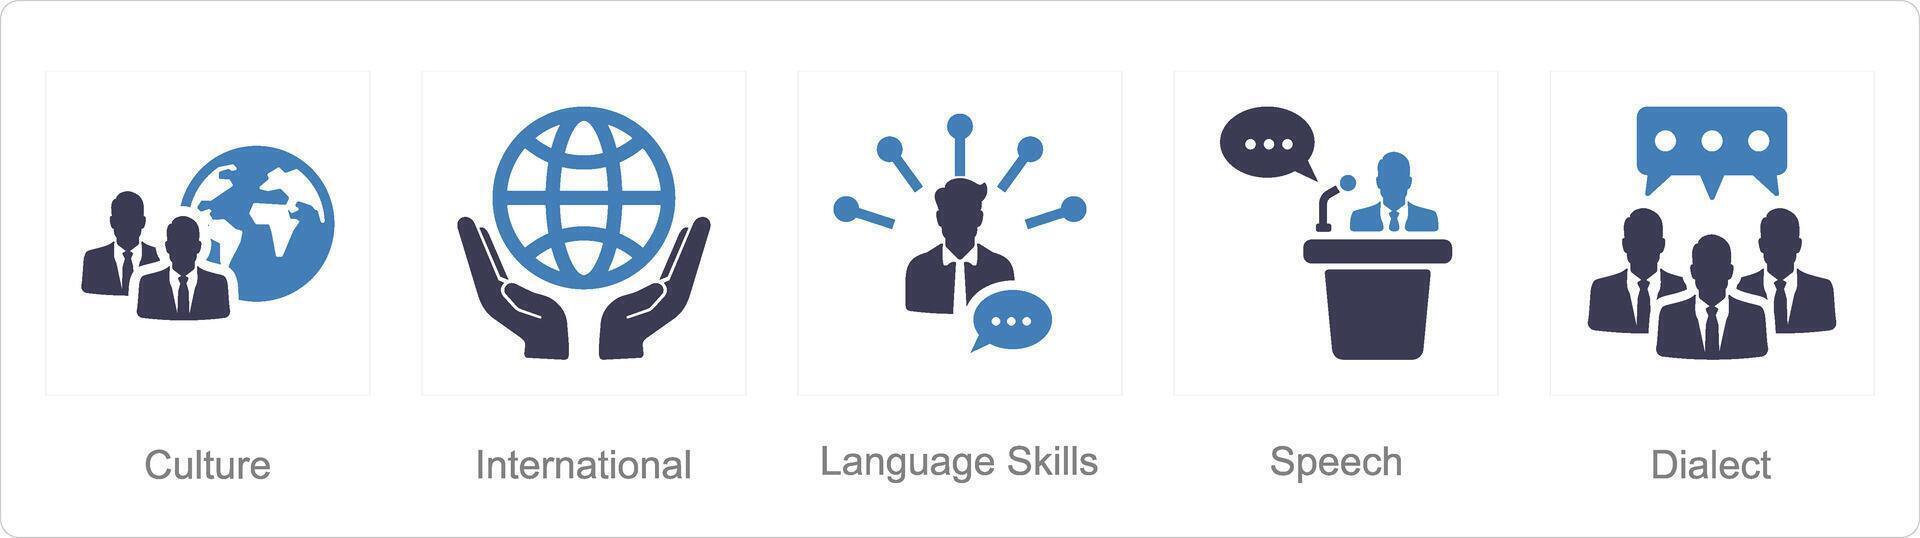 en uppsättning av 5 språk ikoner som cuture, internationell, språk Kompetens vektor